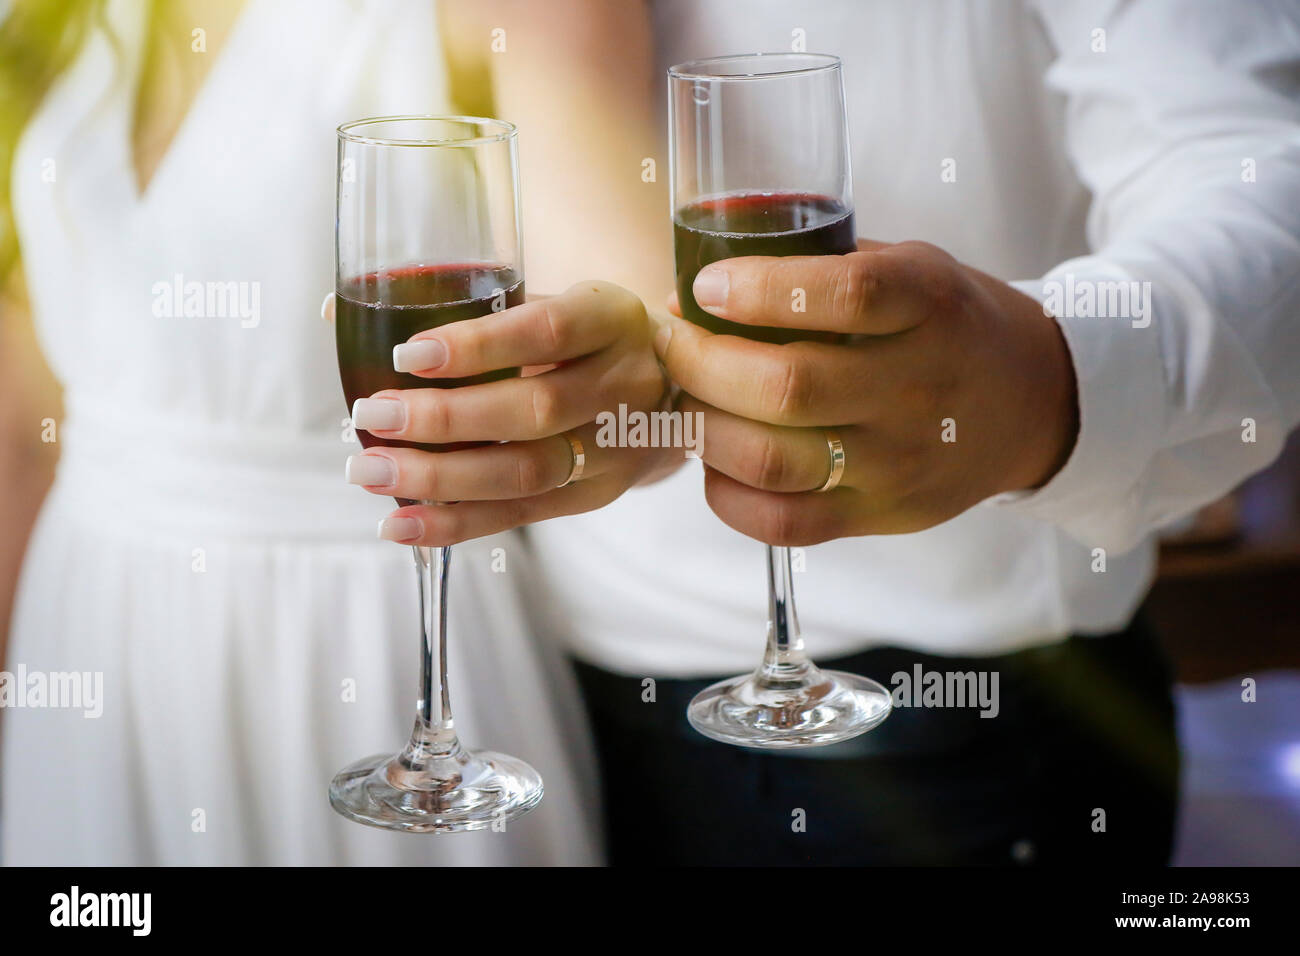 Hände Detail mit Hochzeit Ringe und Weingläser - pflegt Toast - Goldene Hochzeit Ringe Stockfoto